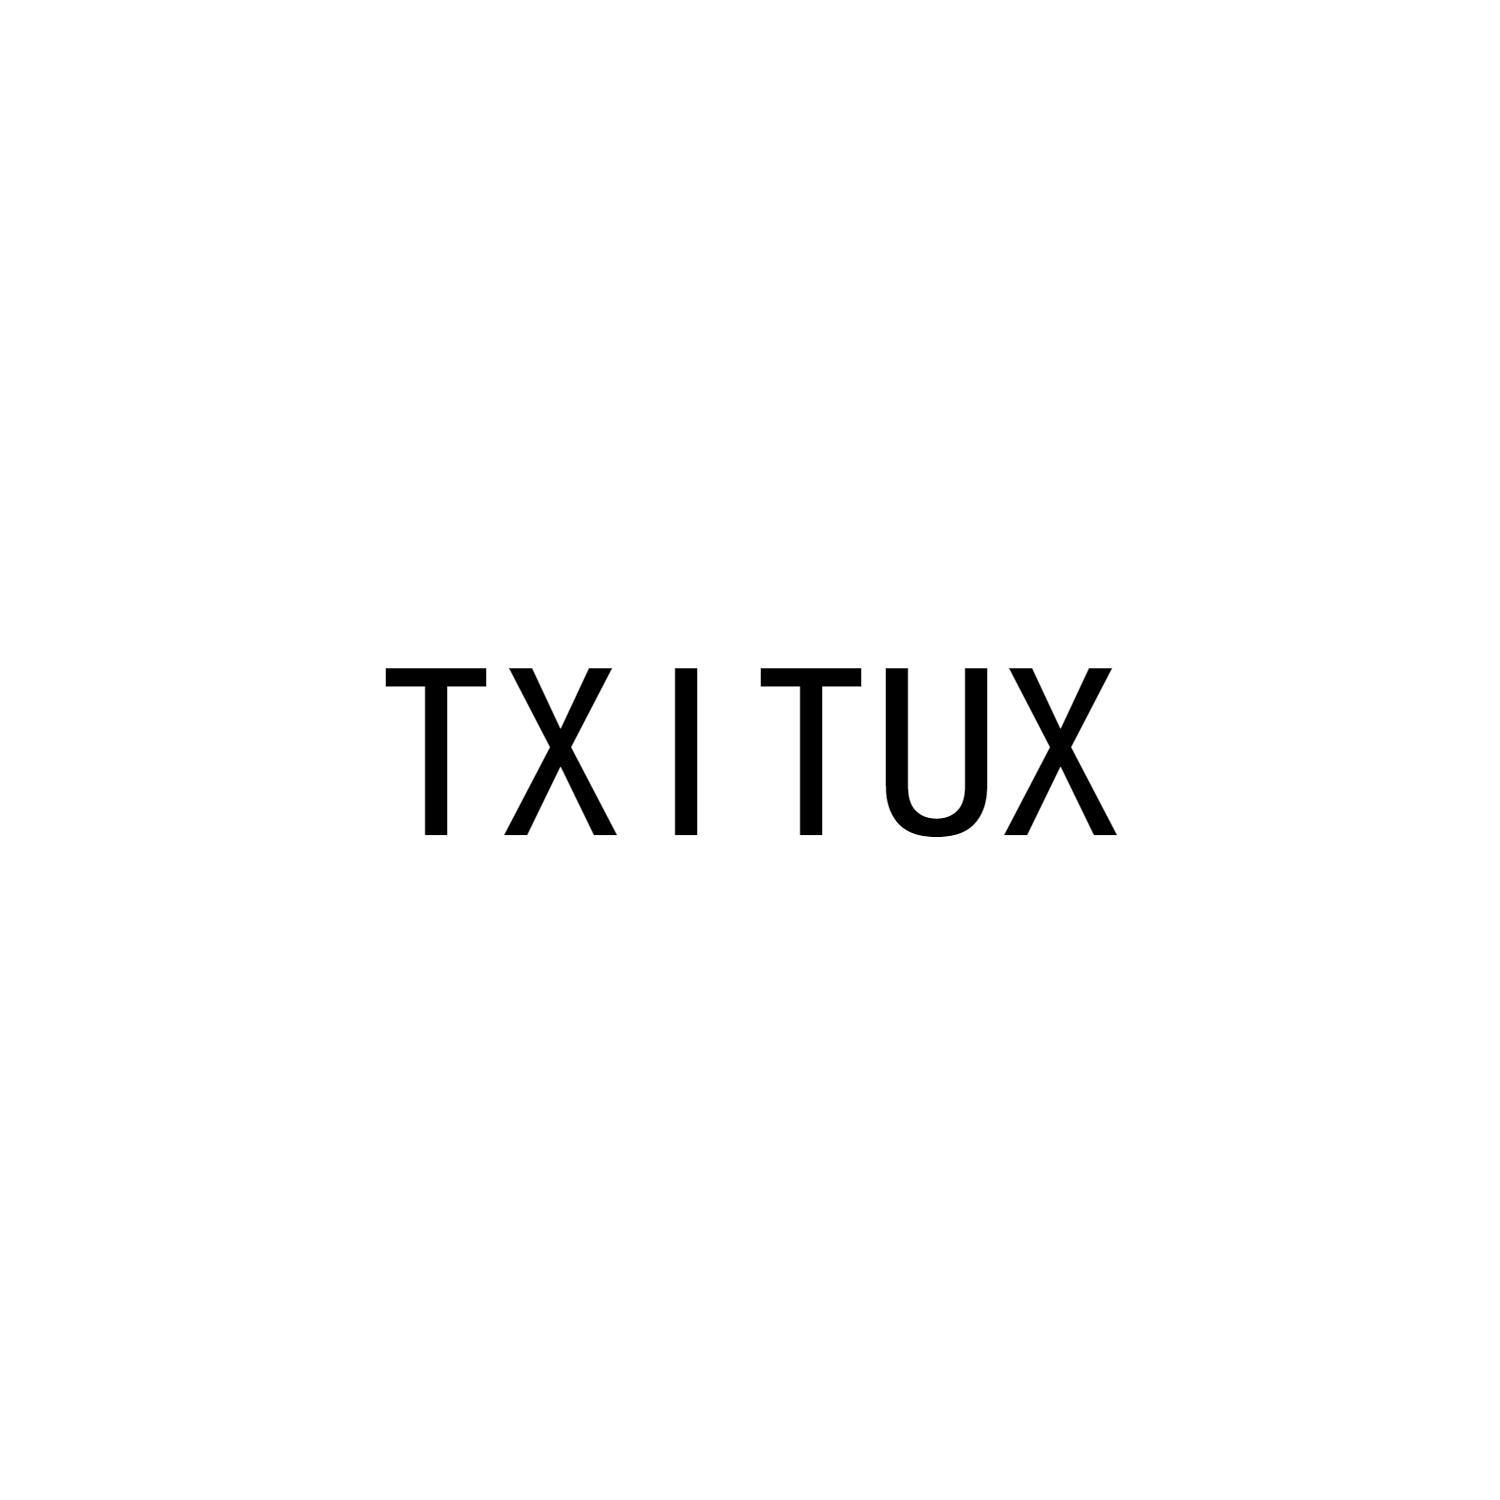 TXITUX